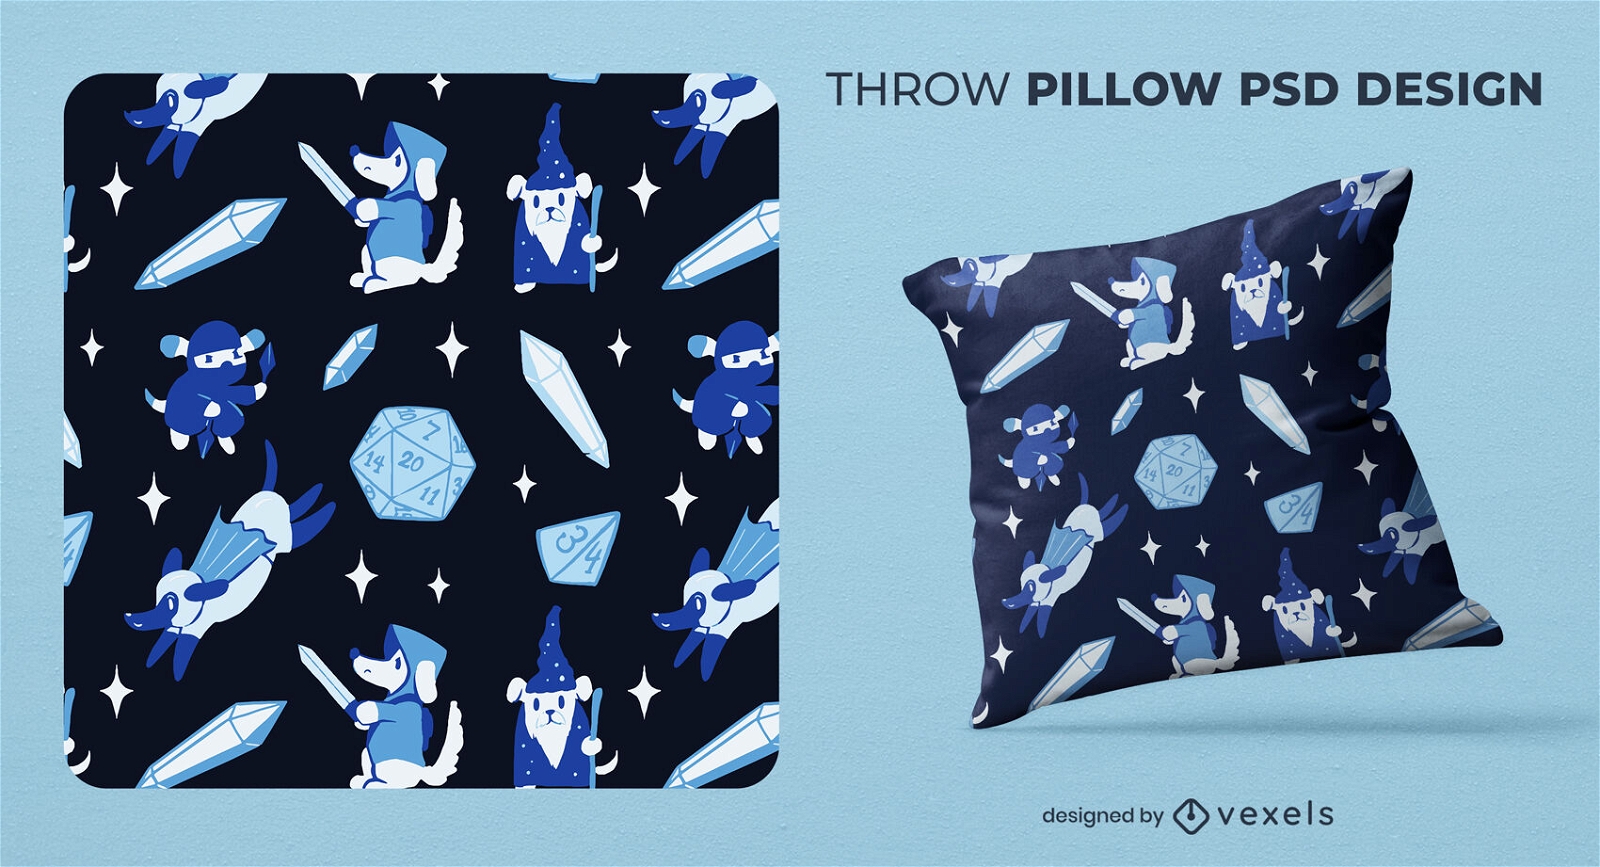 Galactic adventures throw pillow PSD design